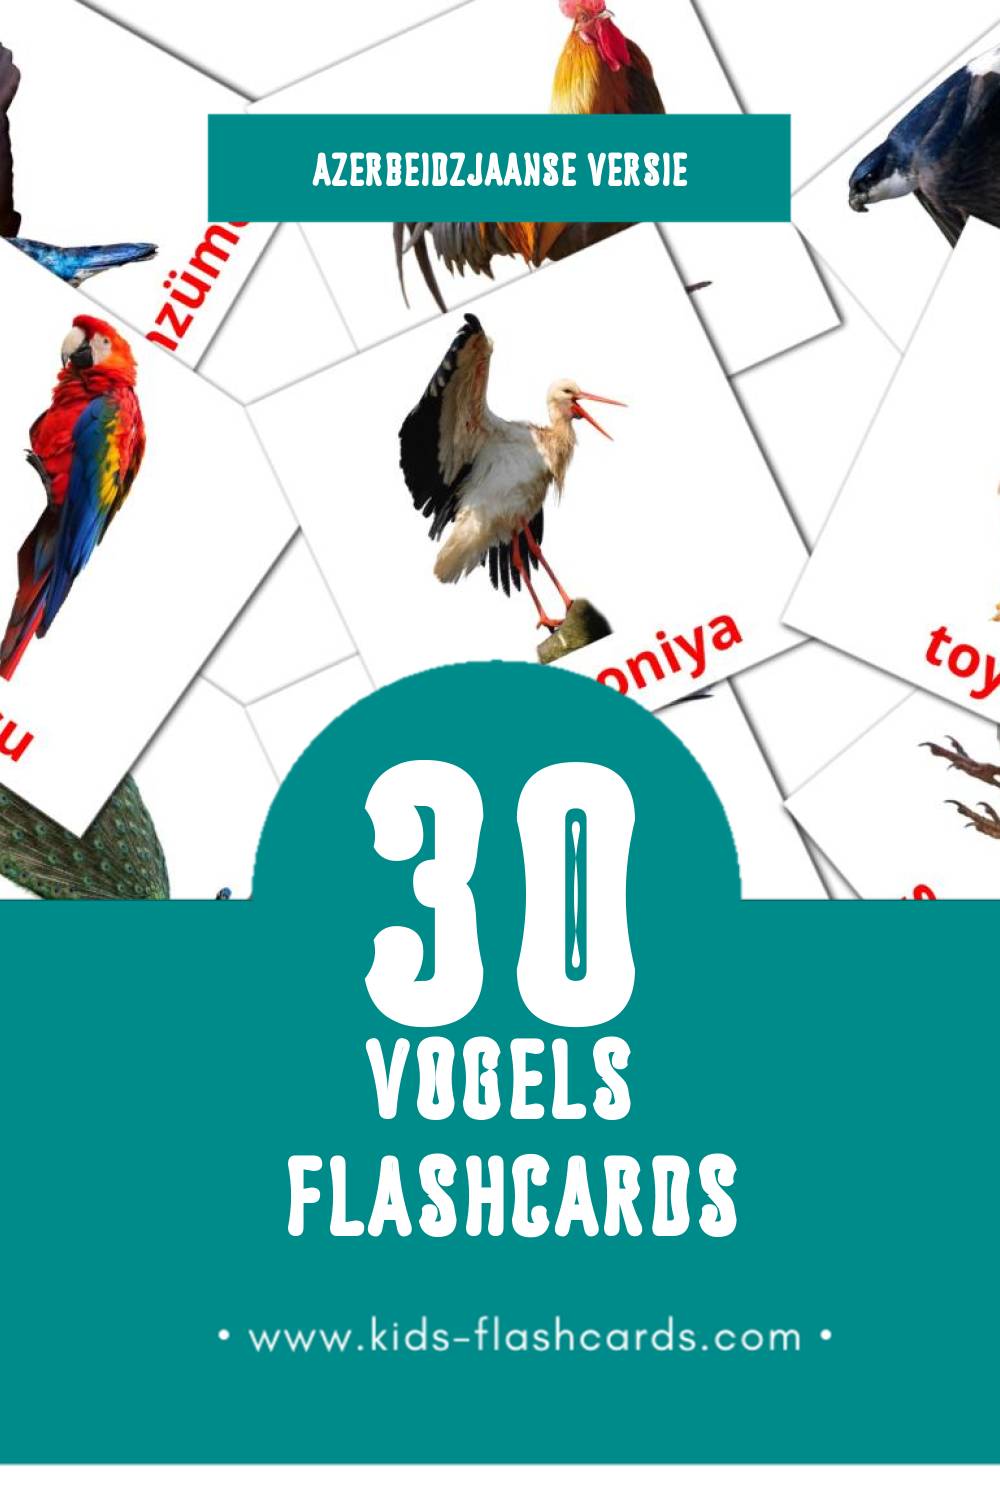 Visuele Quşlar Flashcards voor Kleuters (30 kaarten in het Azerbeidzjaans)